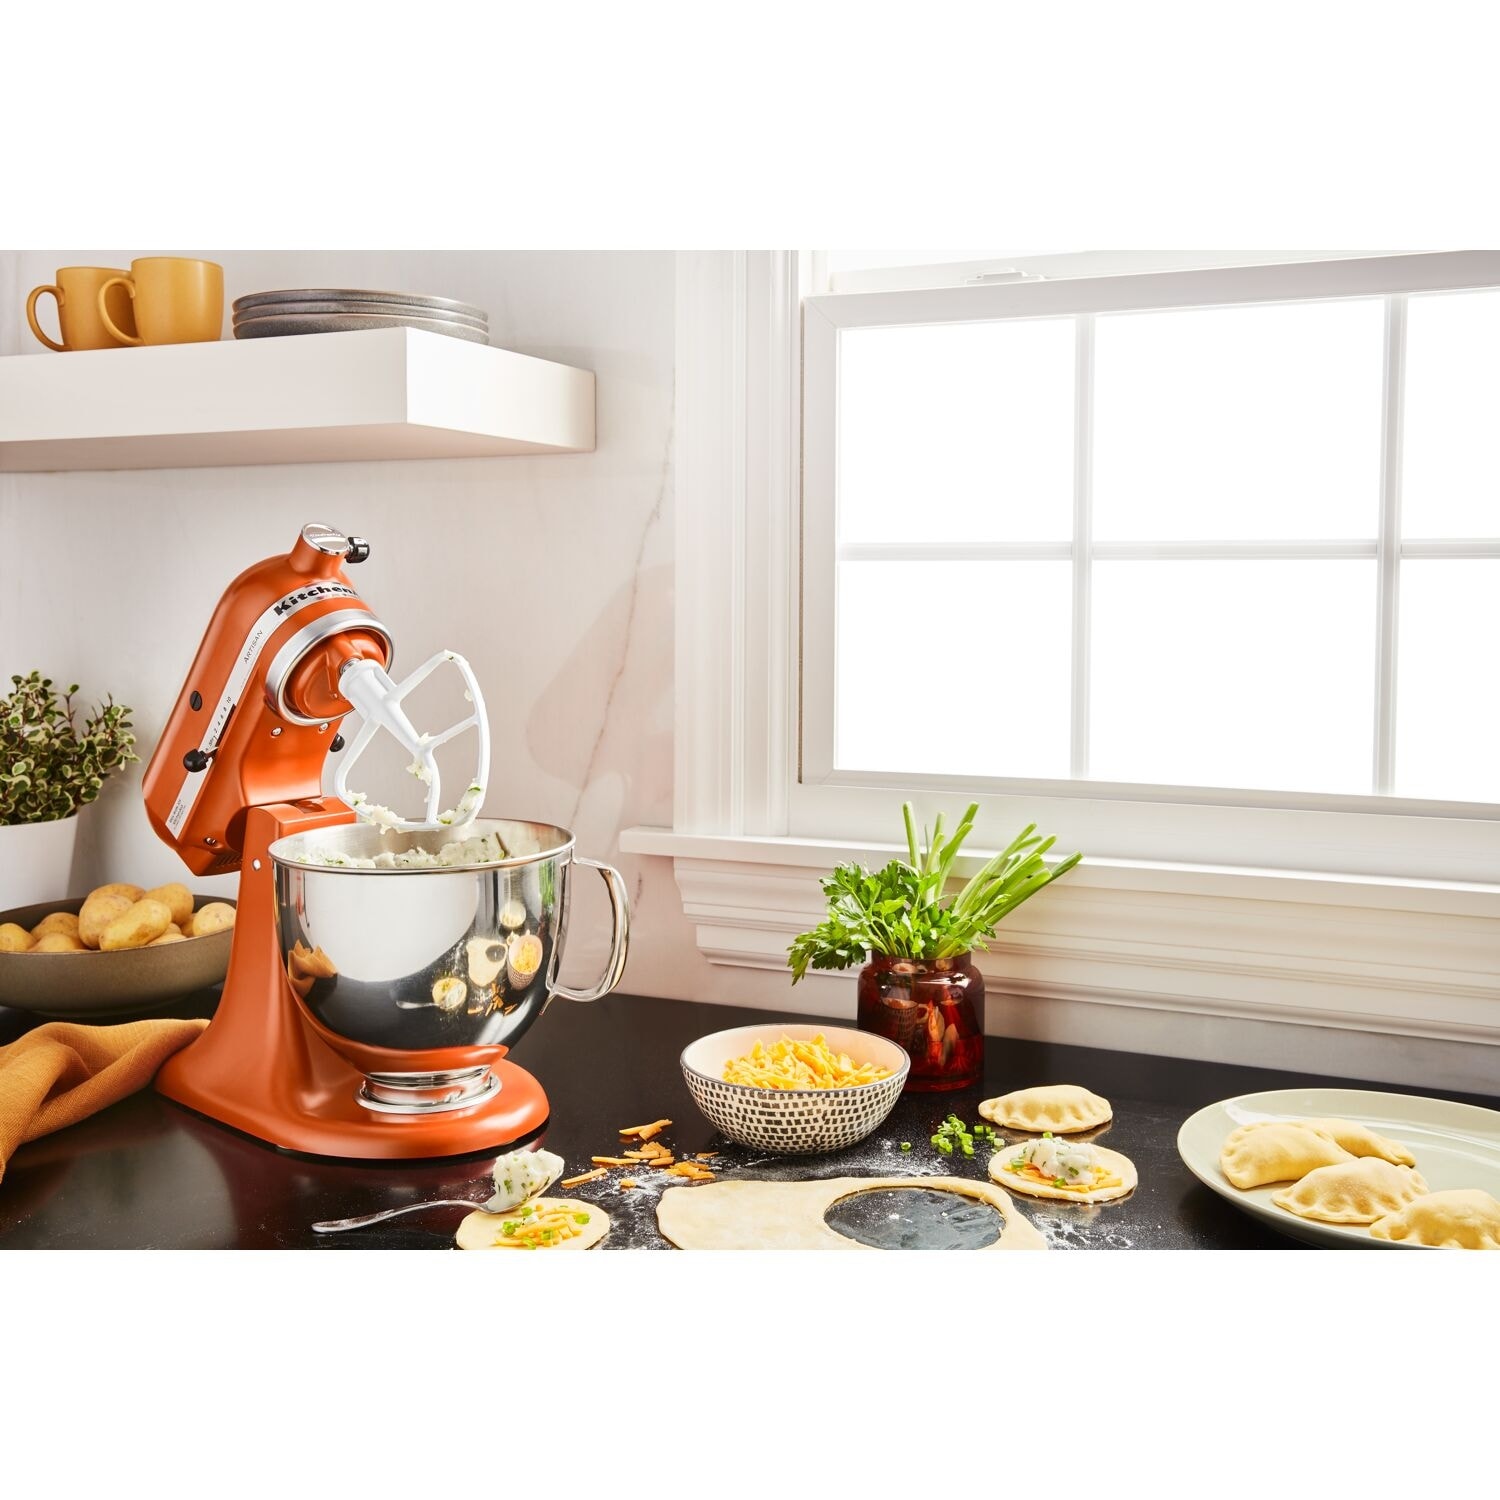 KitchenAid Artisan 5-Quart Tilt-Head Stand Mixer in Scorched Orange